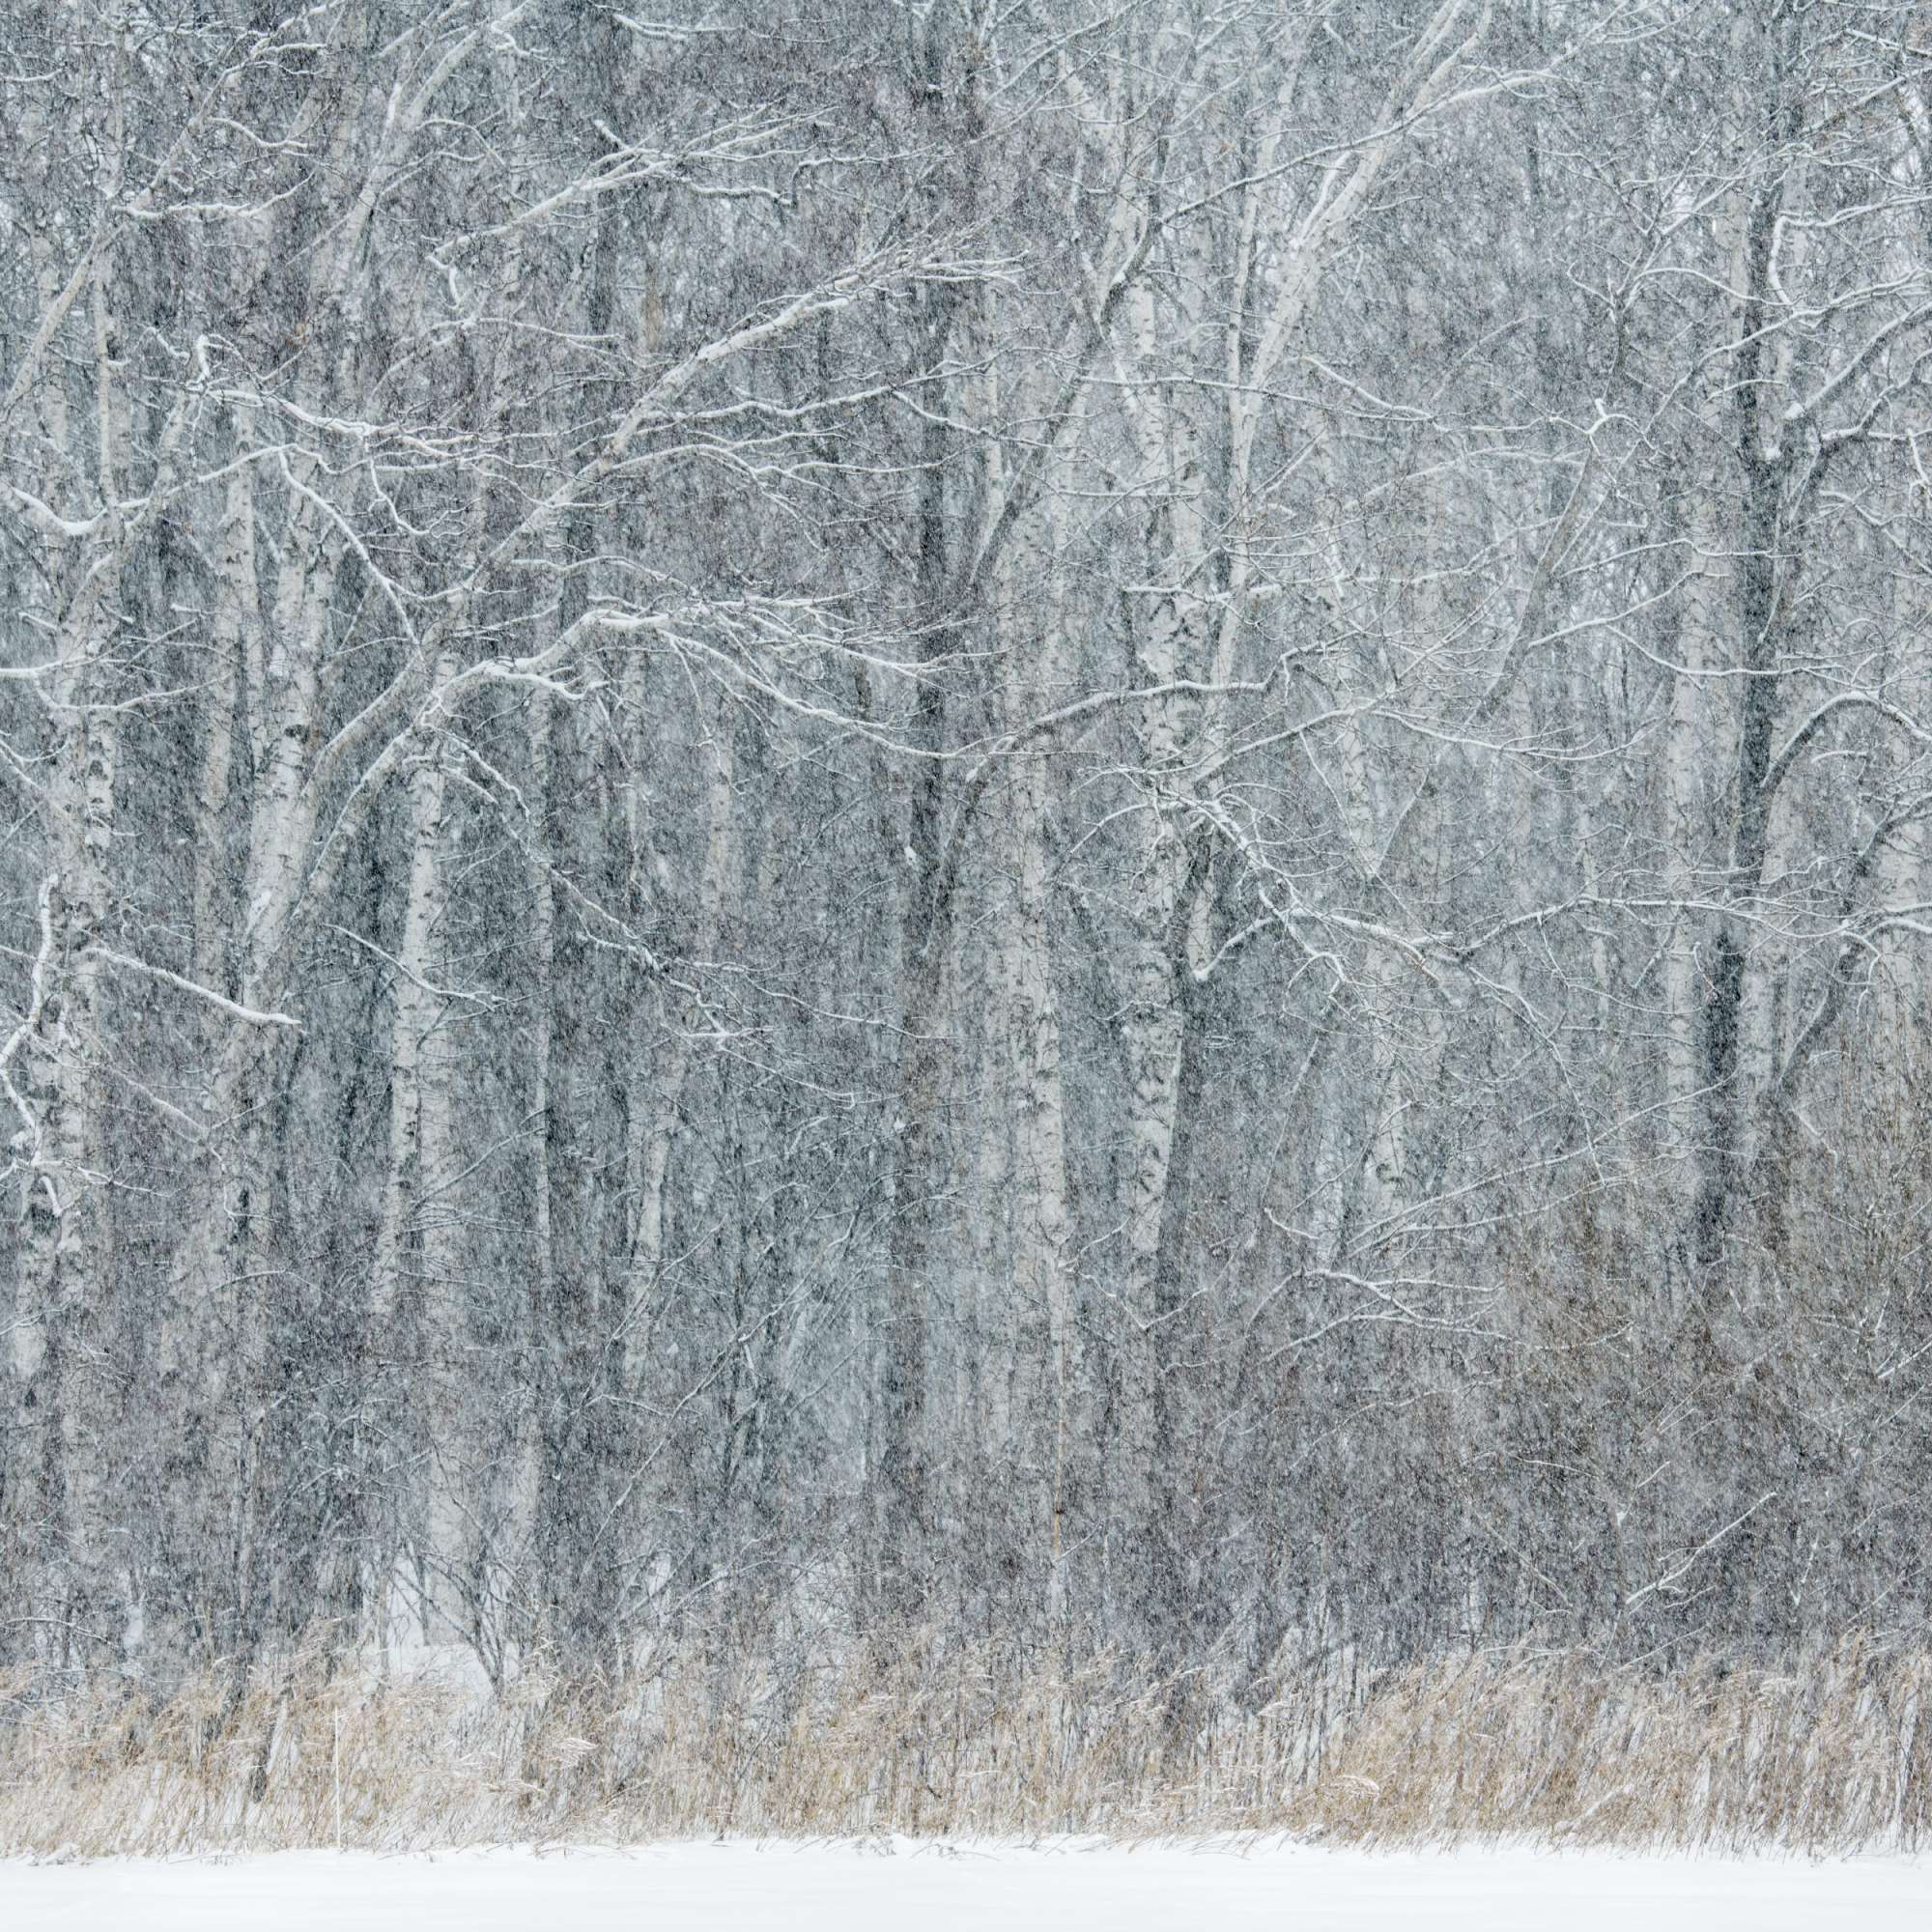 Birch in Blizzard Hokkaido by Paul Gallagher aspect2i